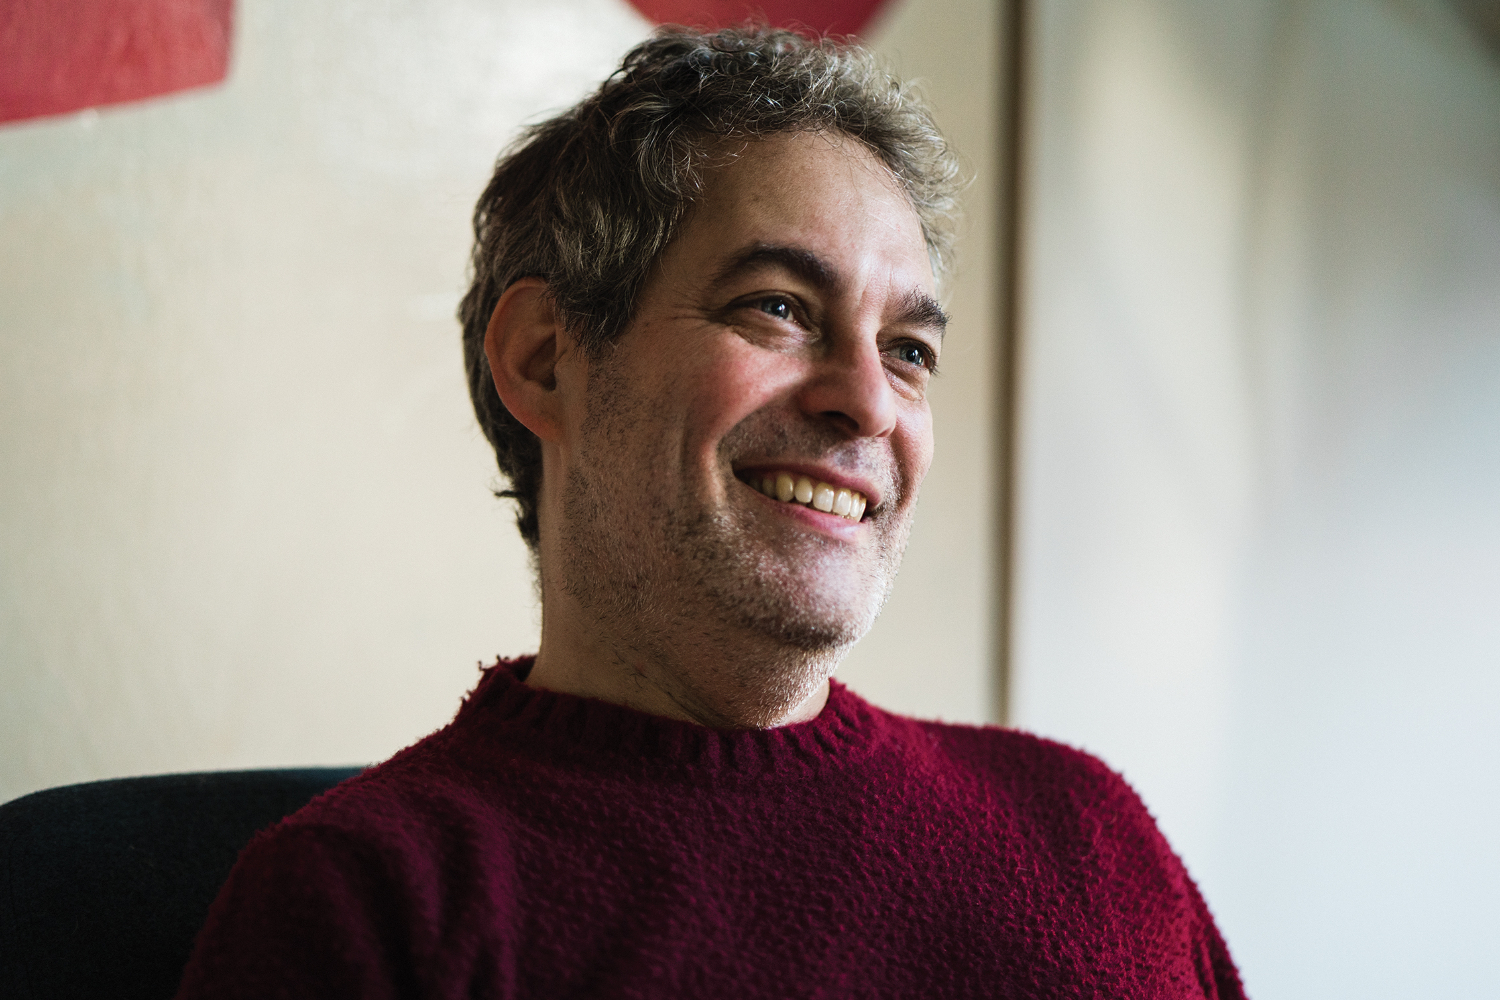 Headshot of author Ian Kerner smiling